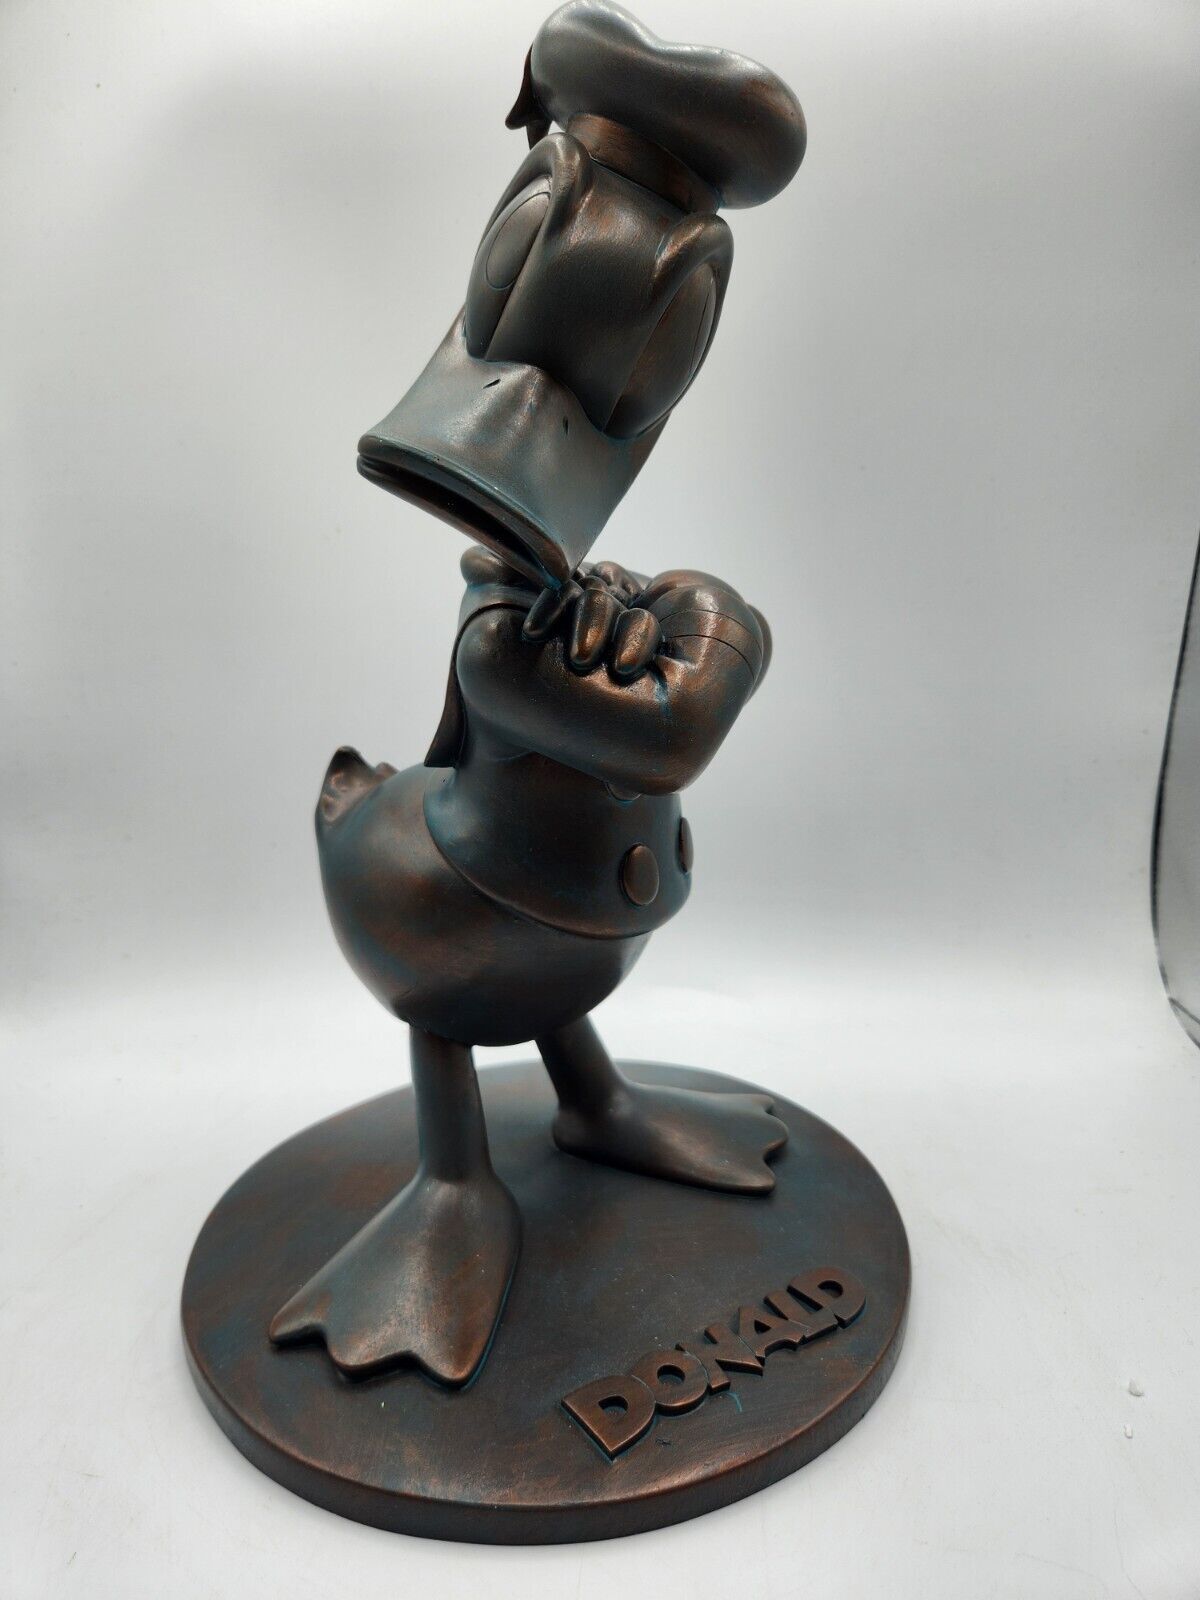 Primary image for Rare Disney Parks Epcot 2012 Festival FG12 Donald Garden Resin Figurine - New